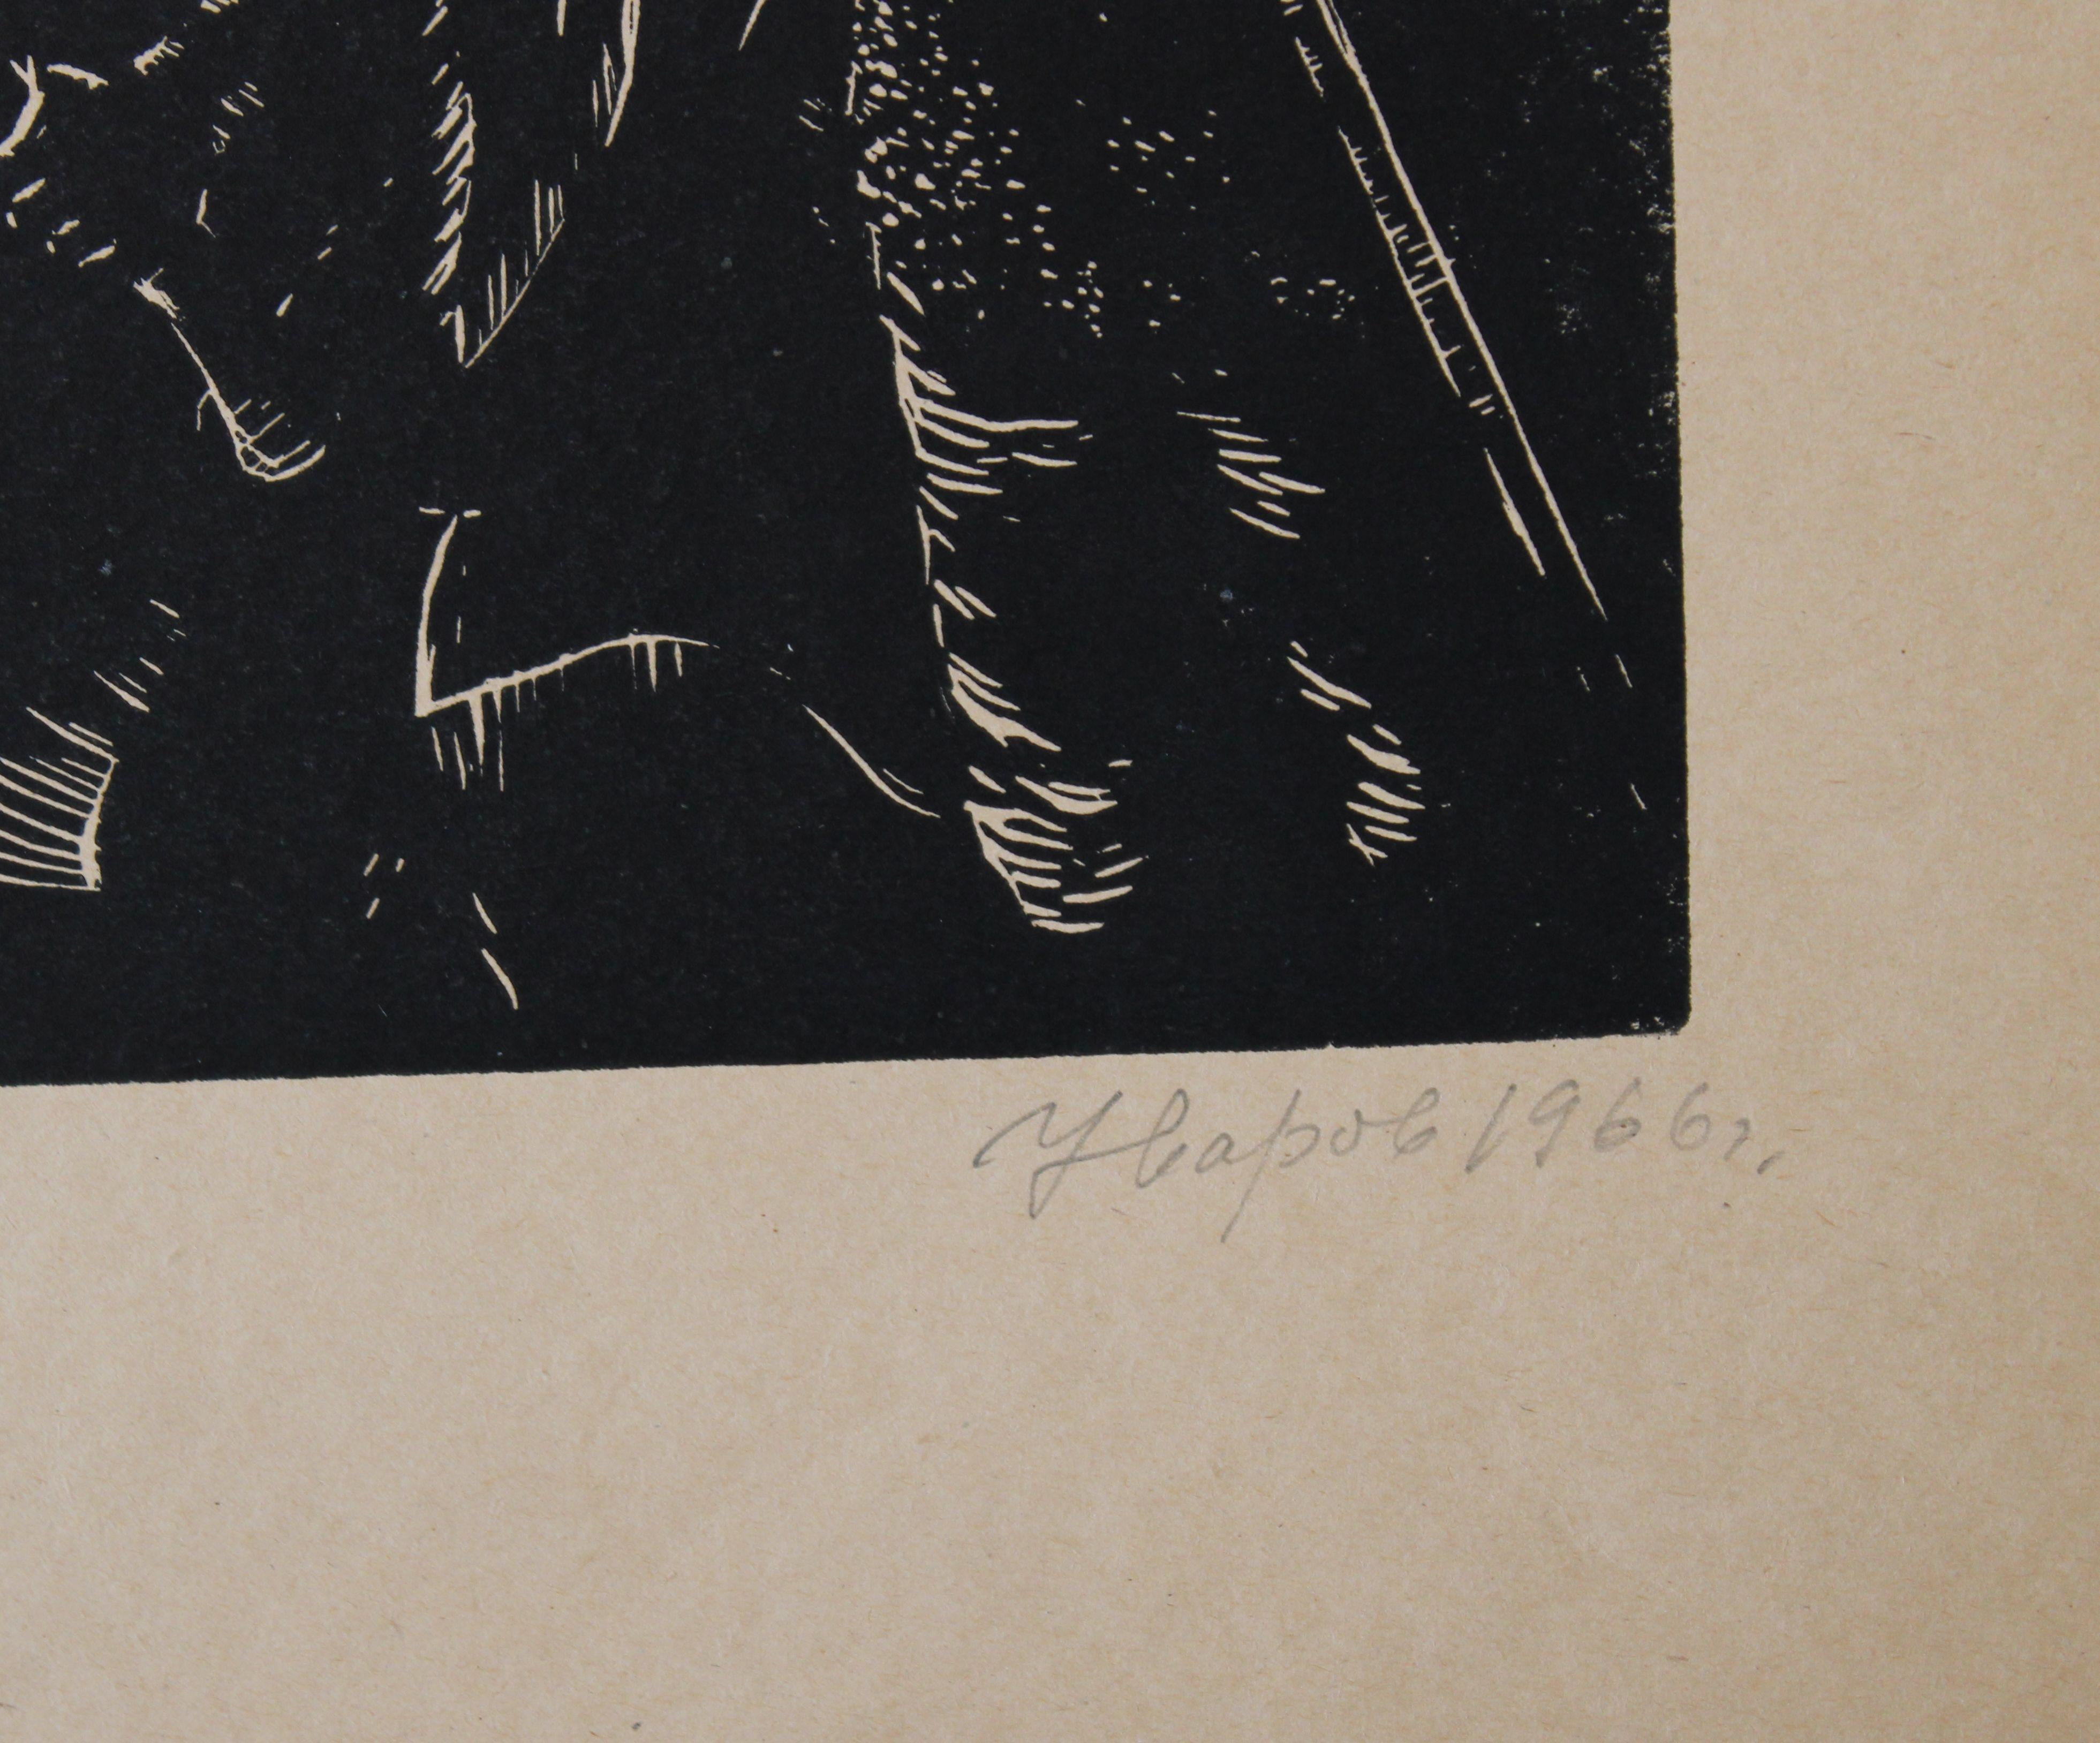 Russisches episches. 2/10  1966, Papier, Linolschnitt, 23,5x35 cm (Volkskunst), Print, von Nikolai Uvarov 